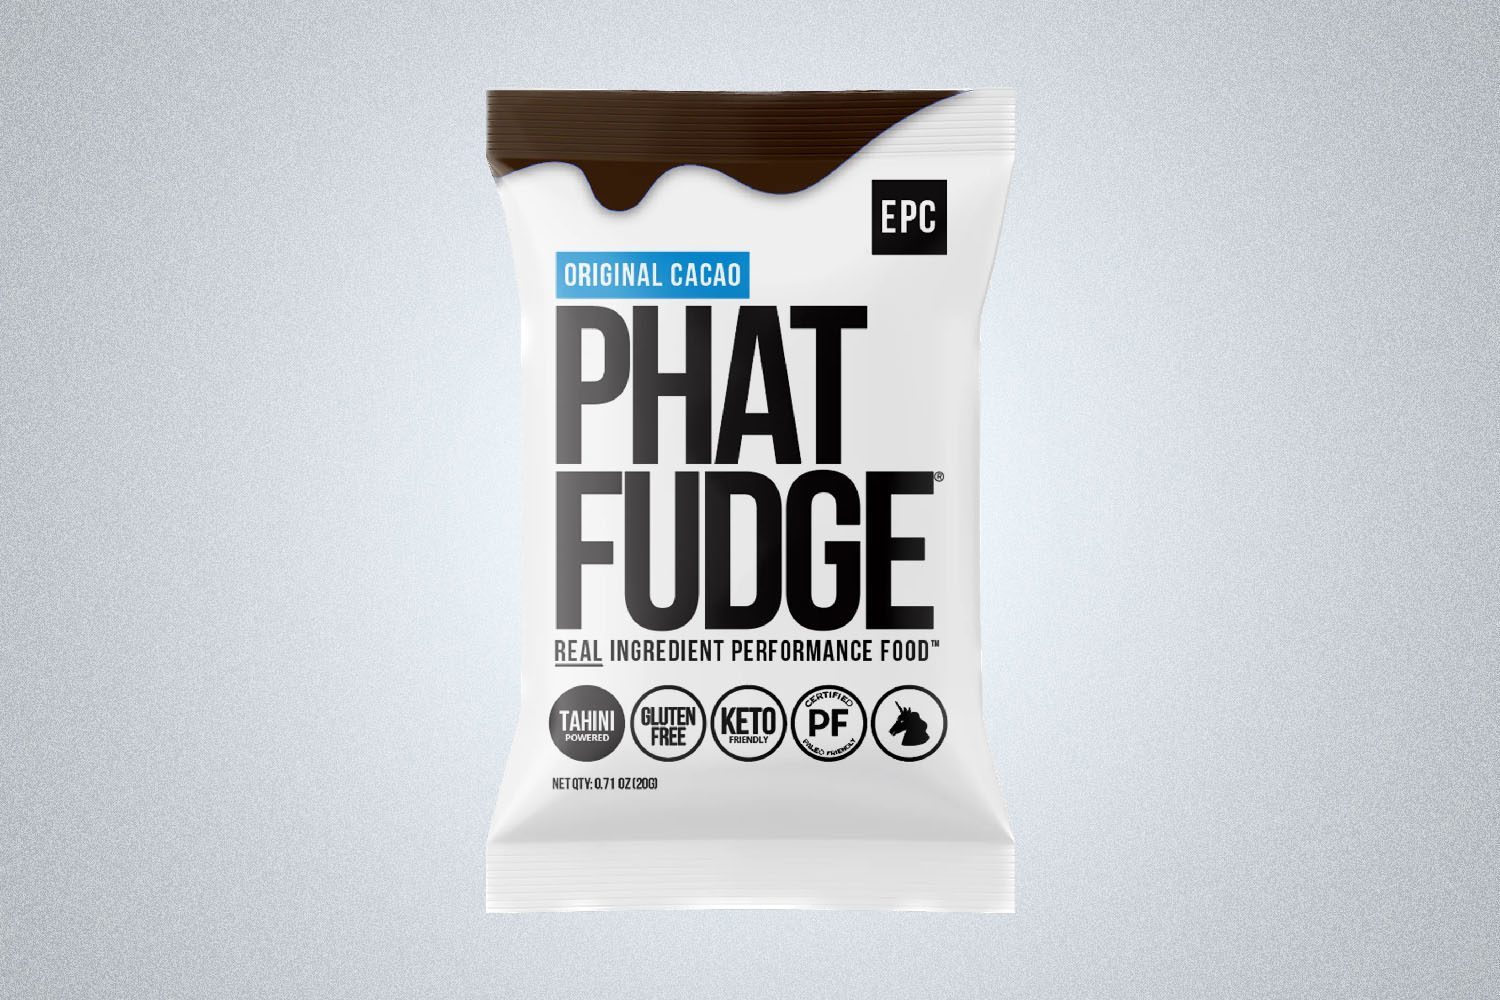 Phat Fudge